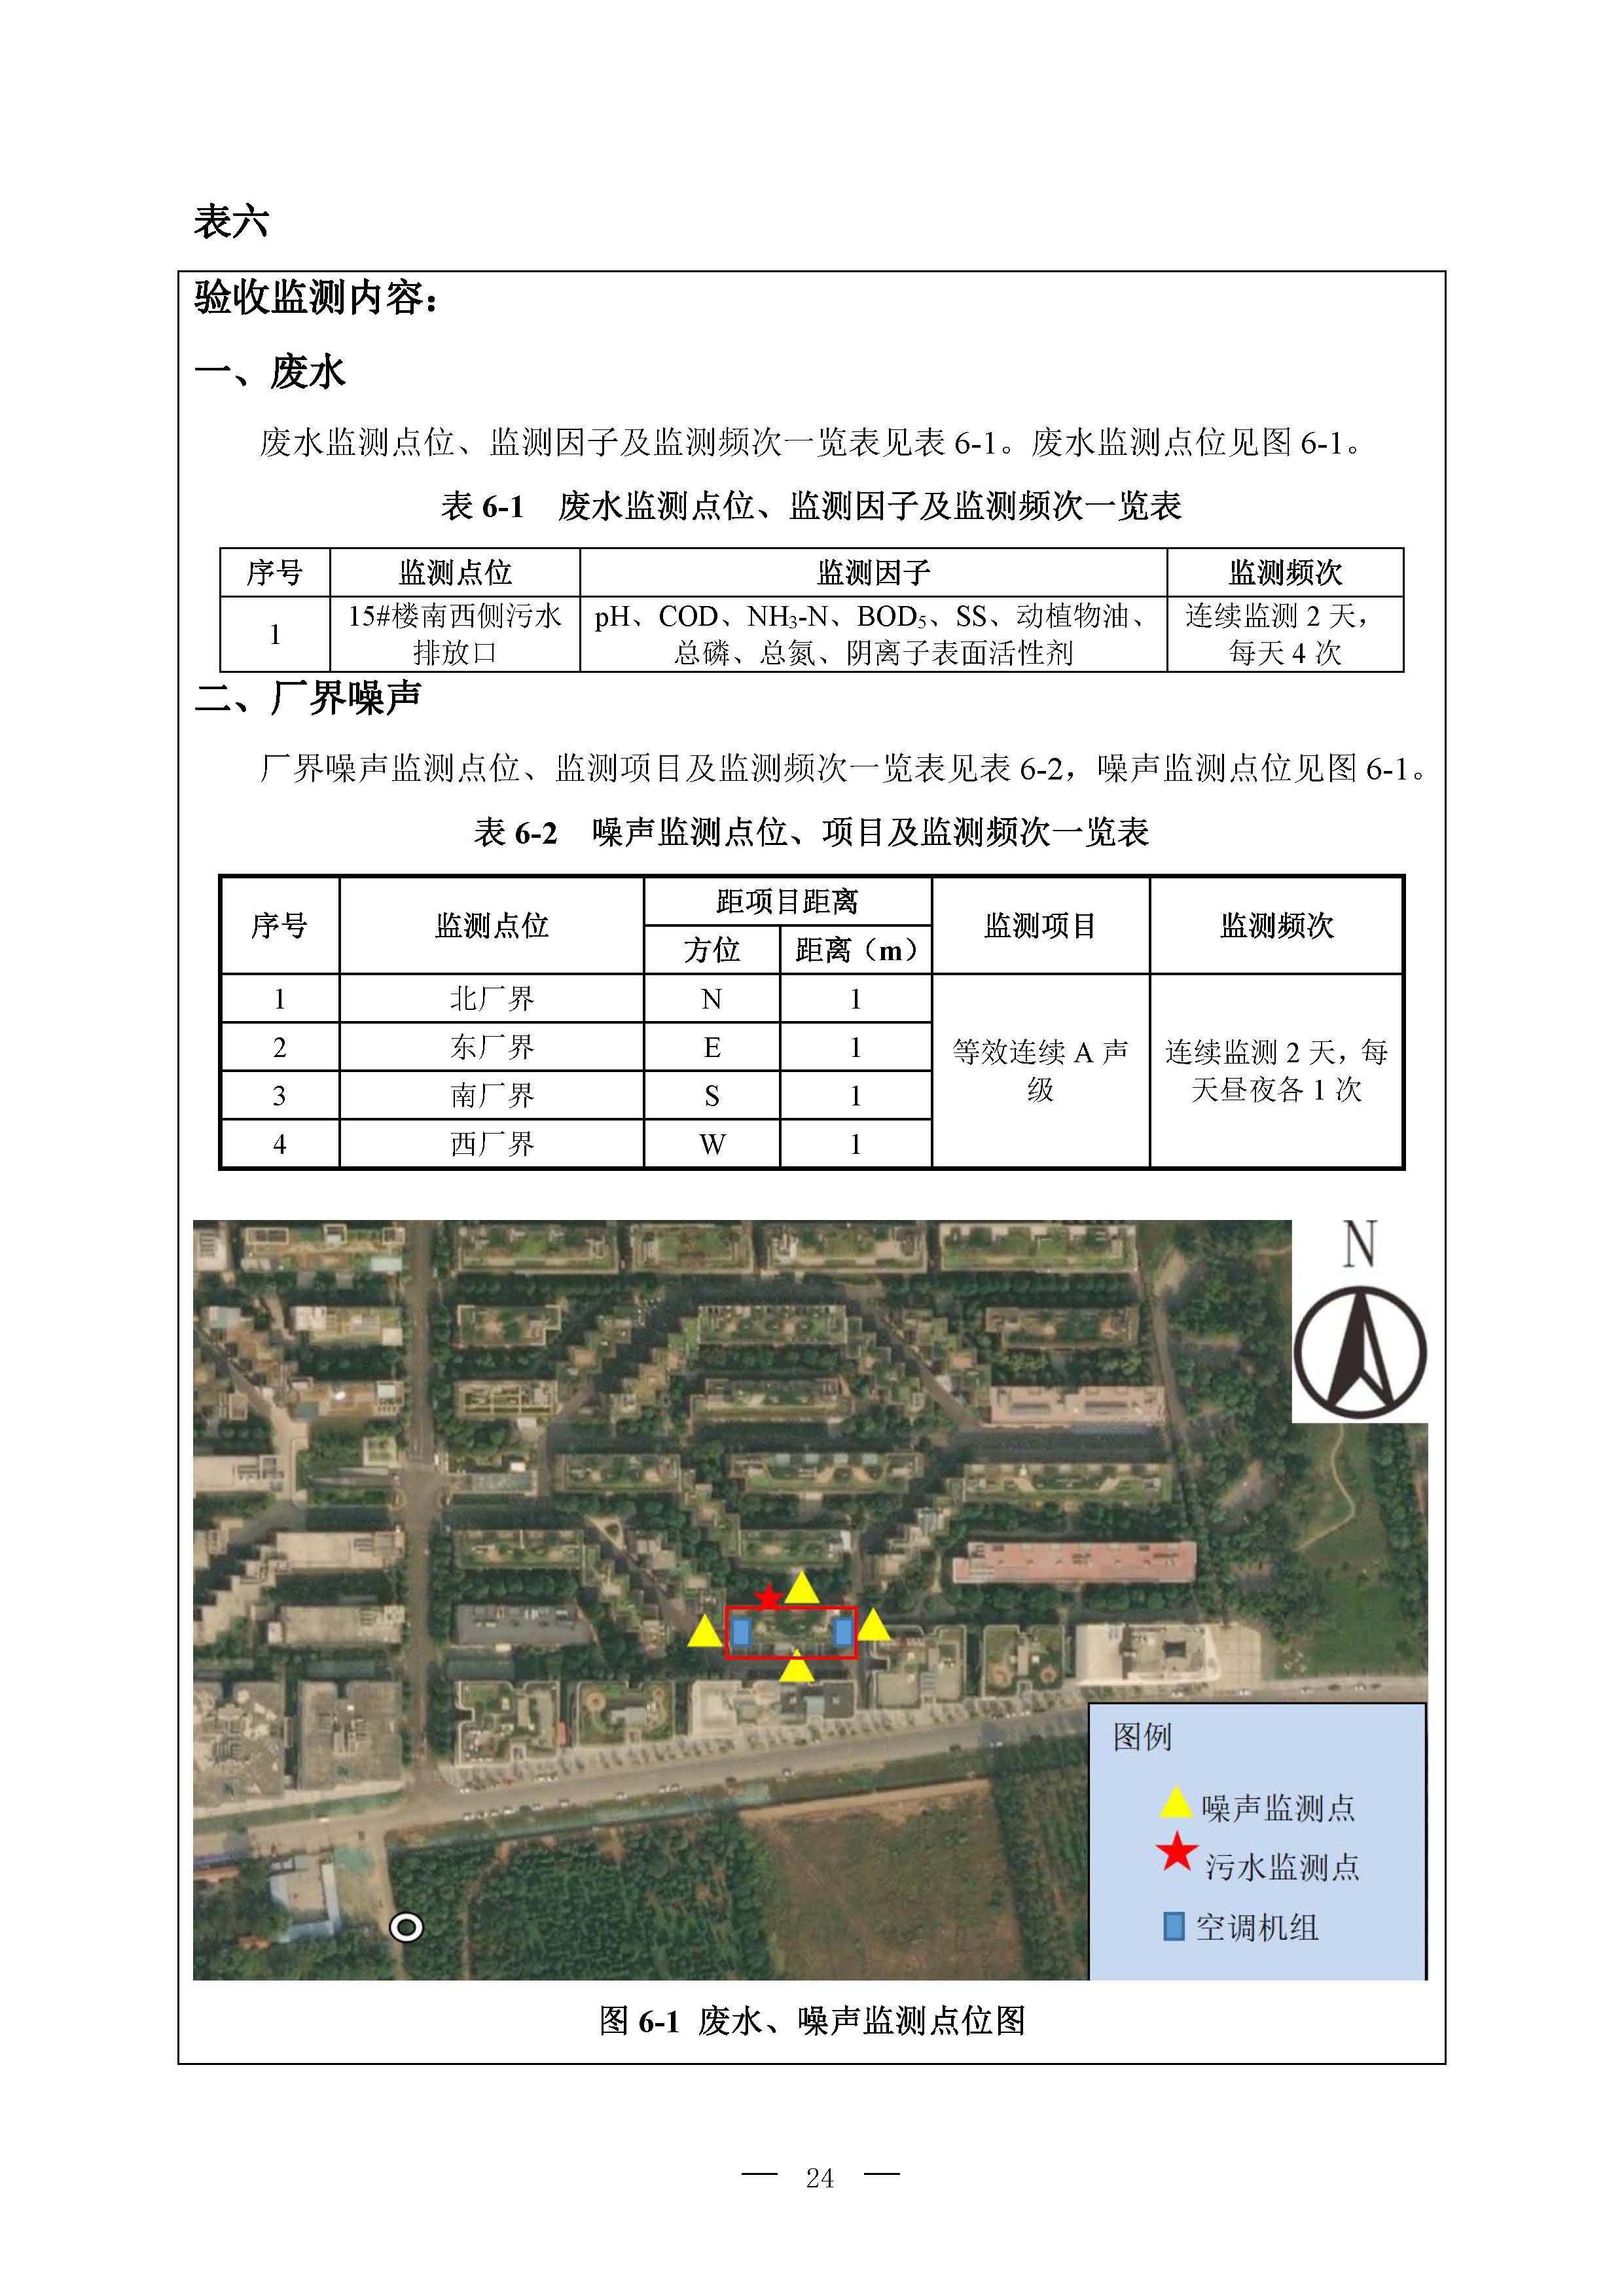 北京博瑞莱智能科技集团有限公司项目竣工环境保护验收监测报告全本公示(图28)